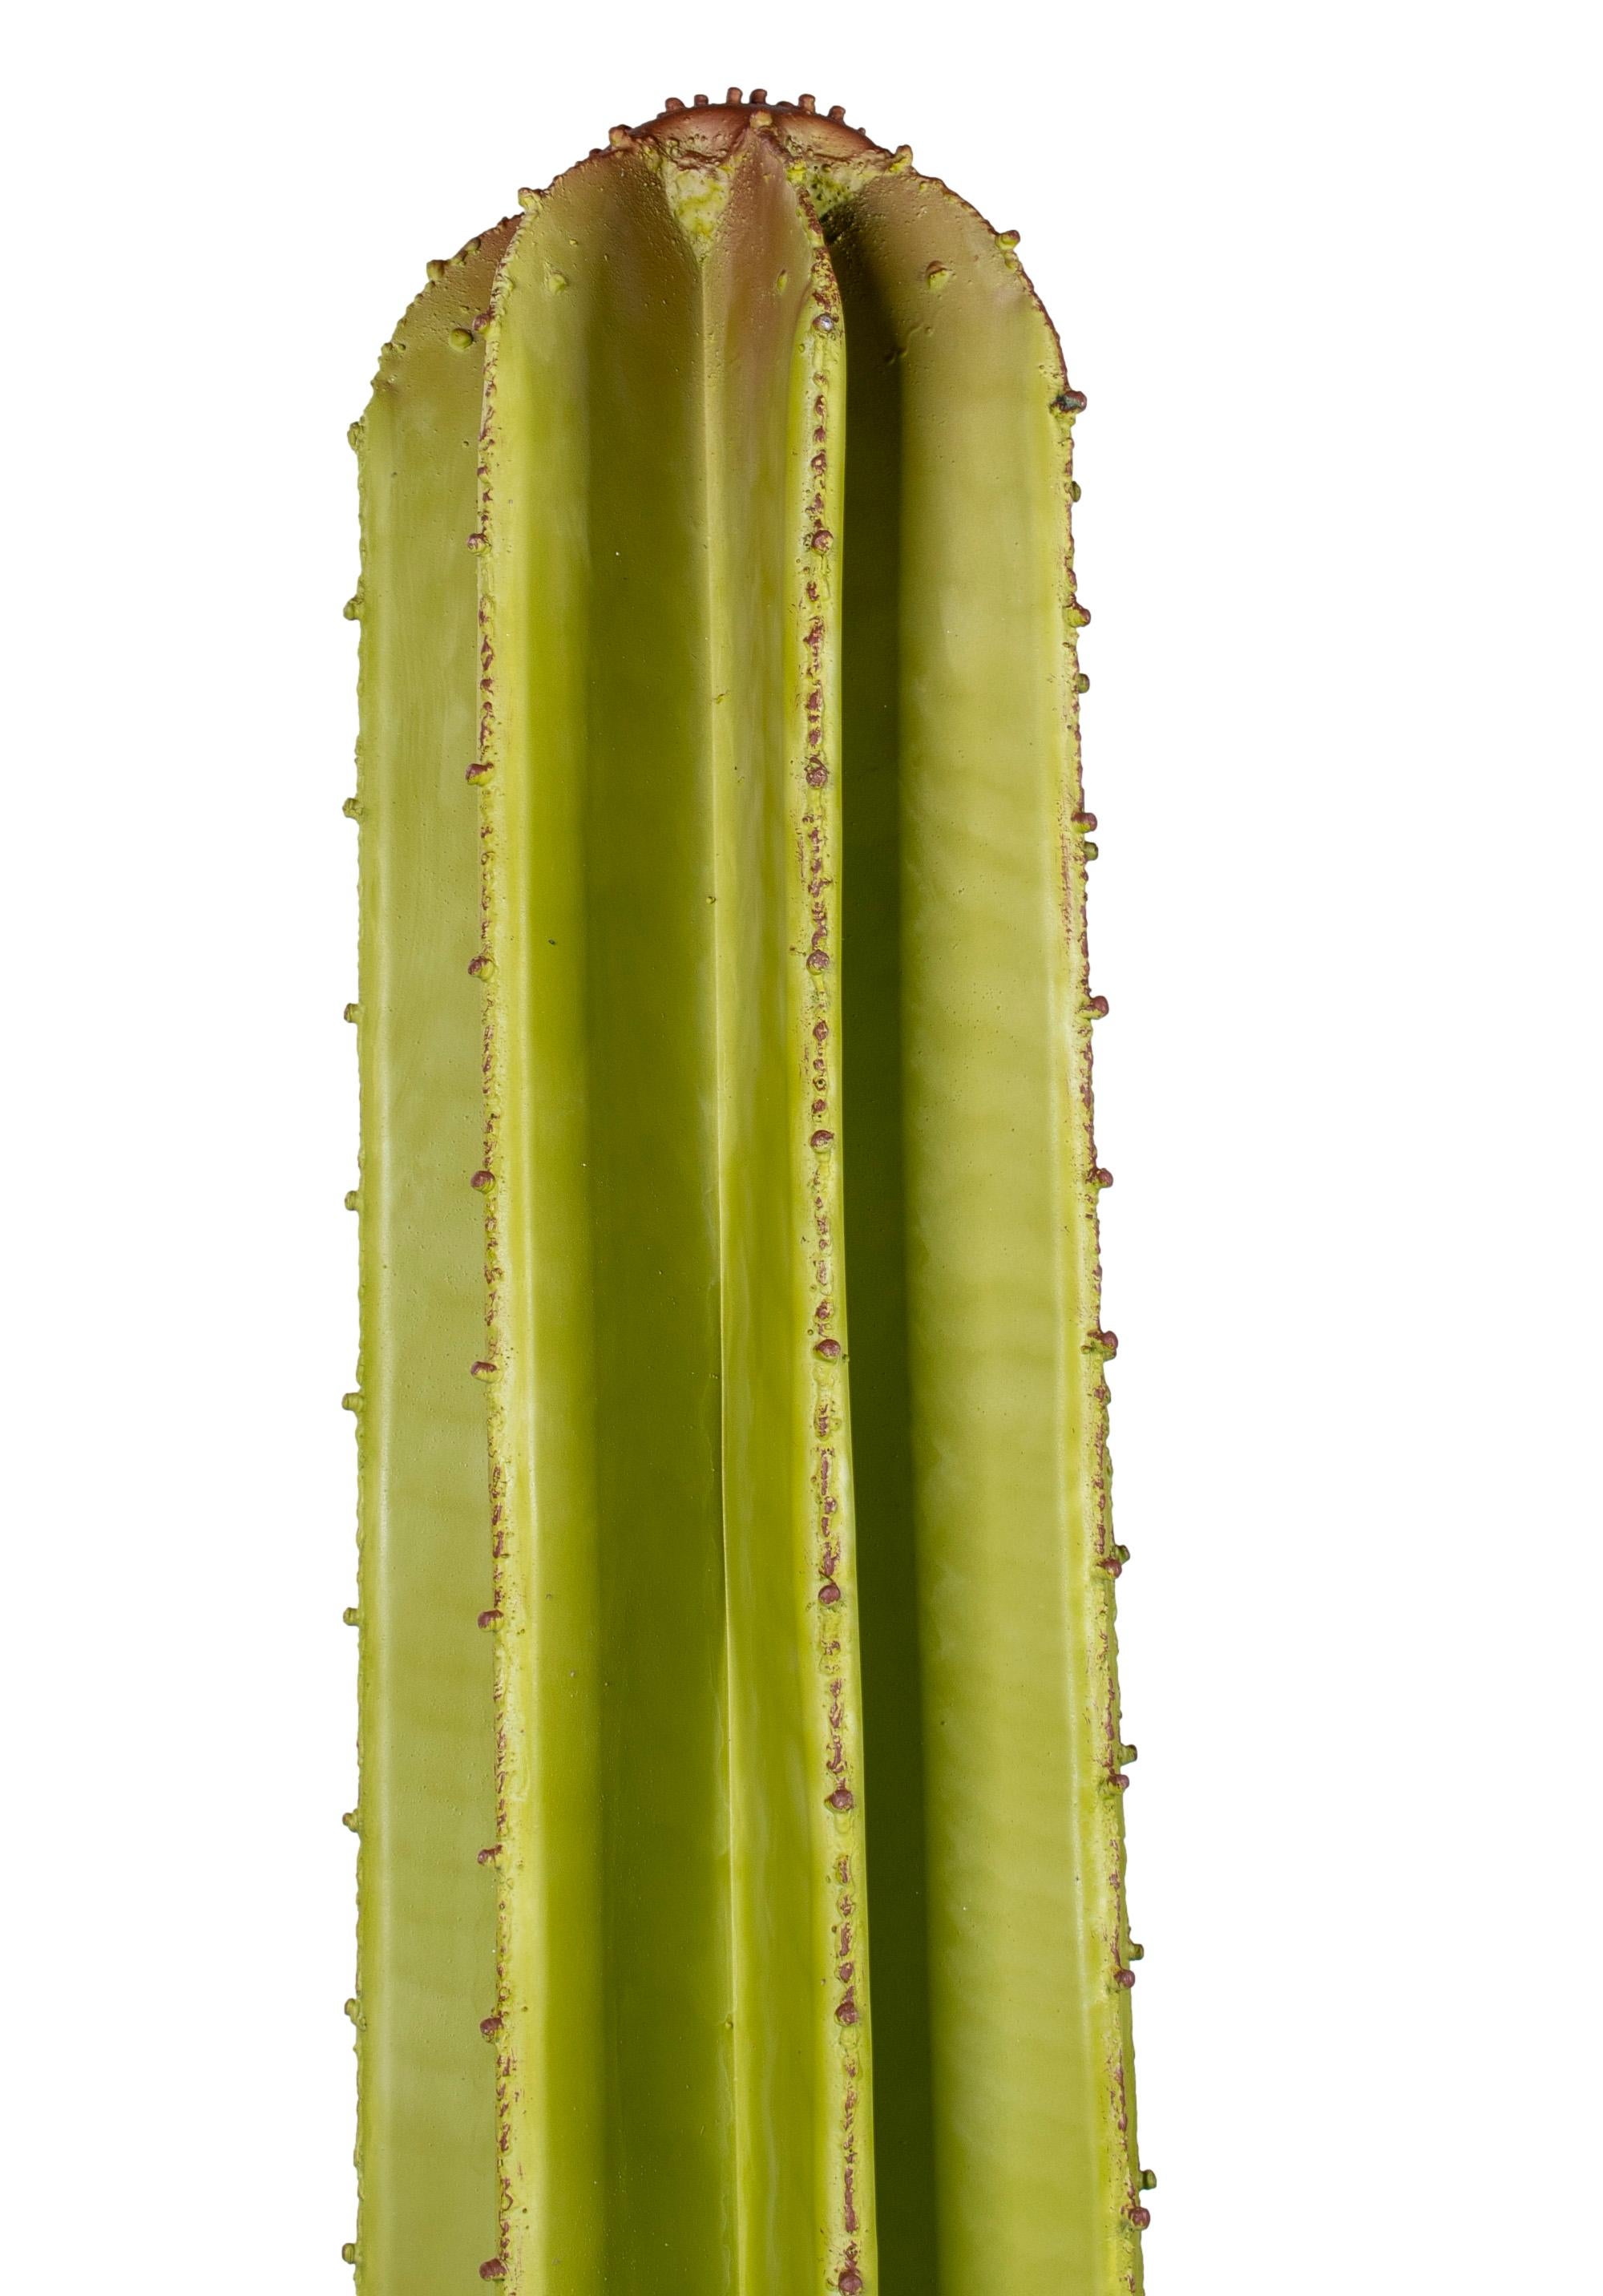 cactus in spanish